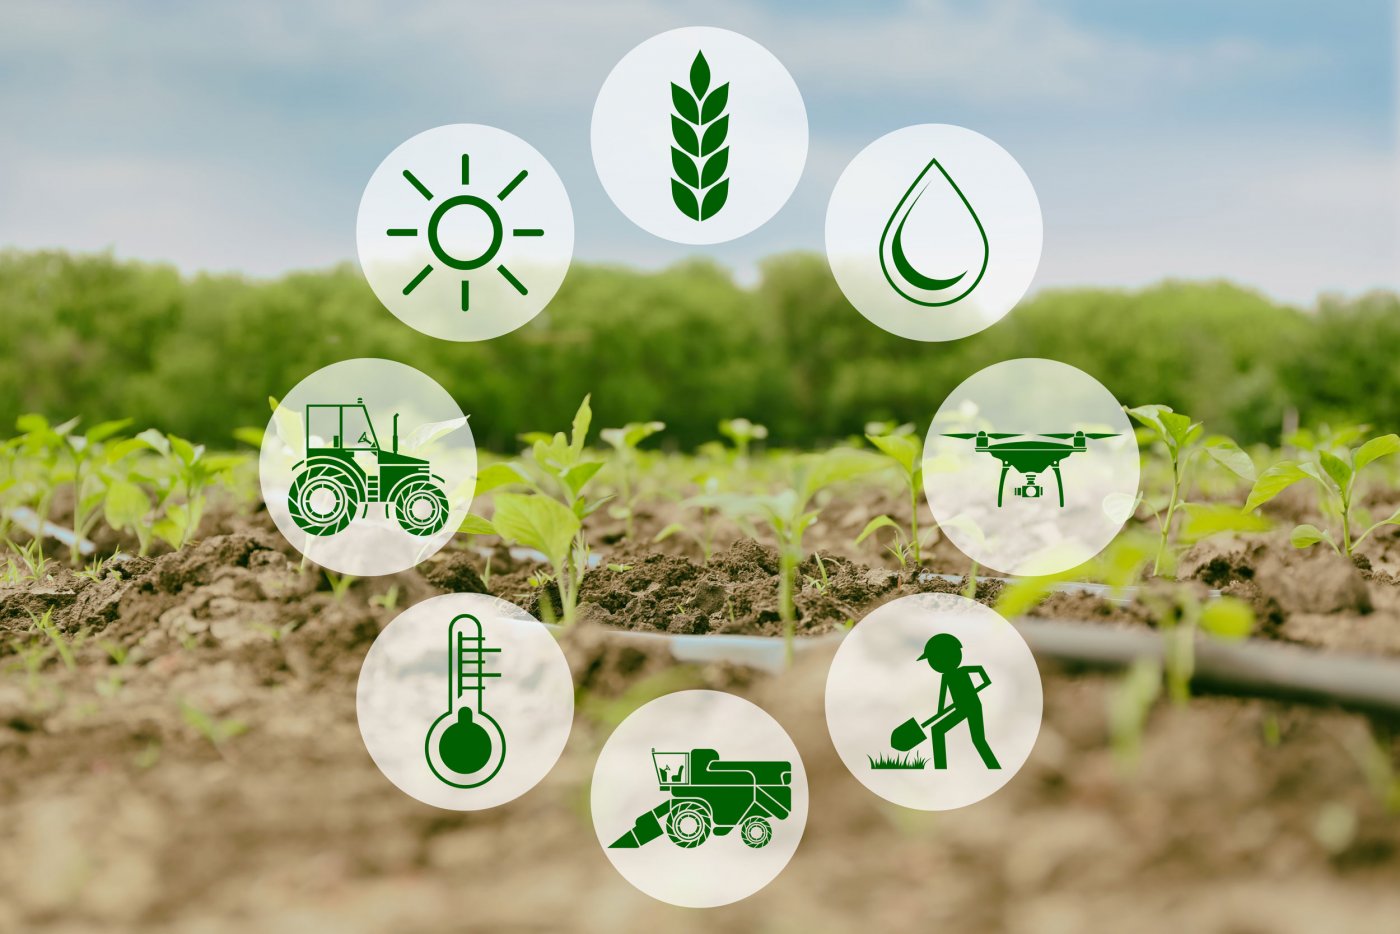 nông nghiệp 4.0 là gì